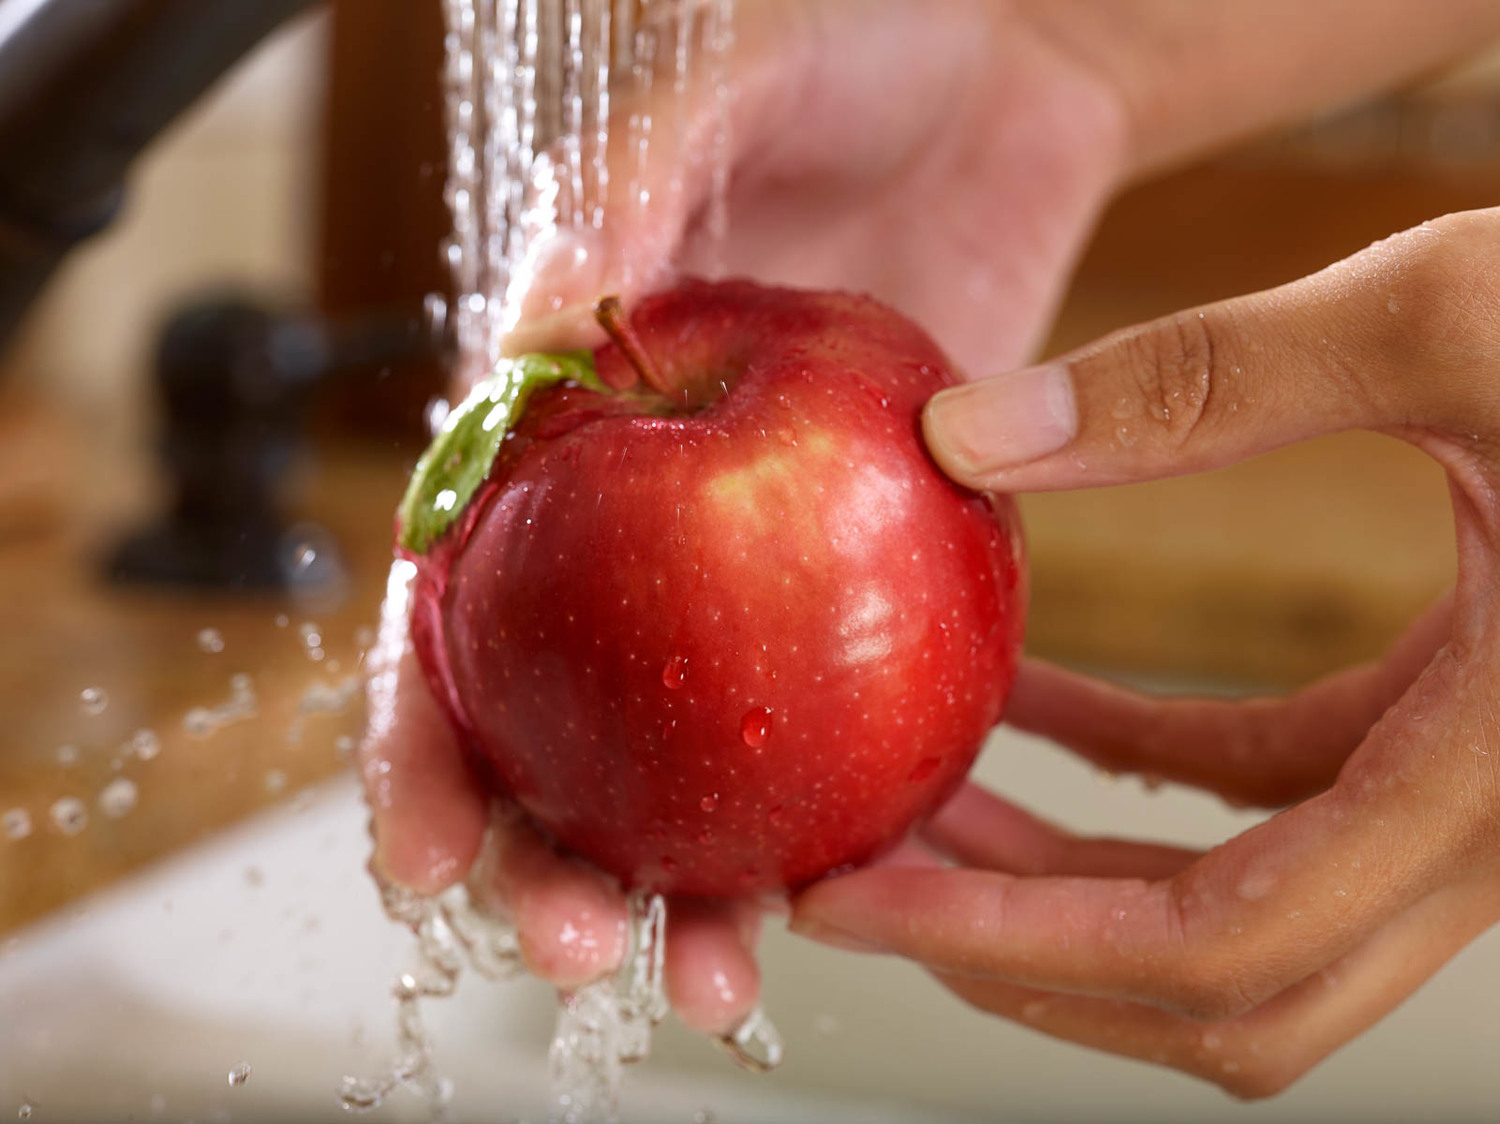 membersihkan apel